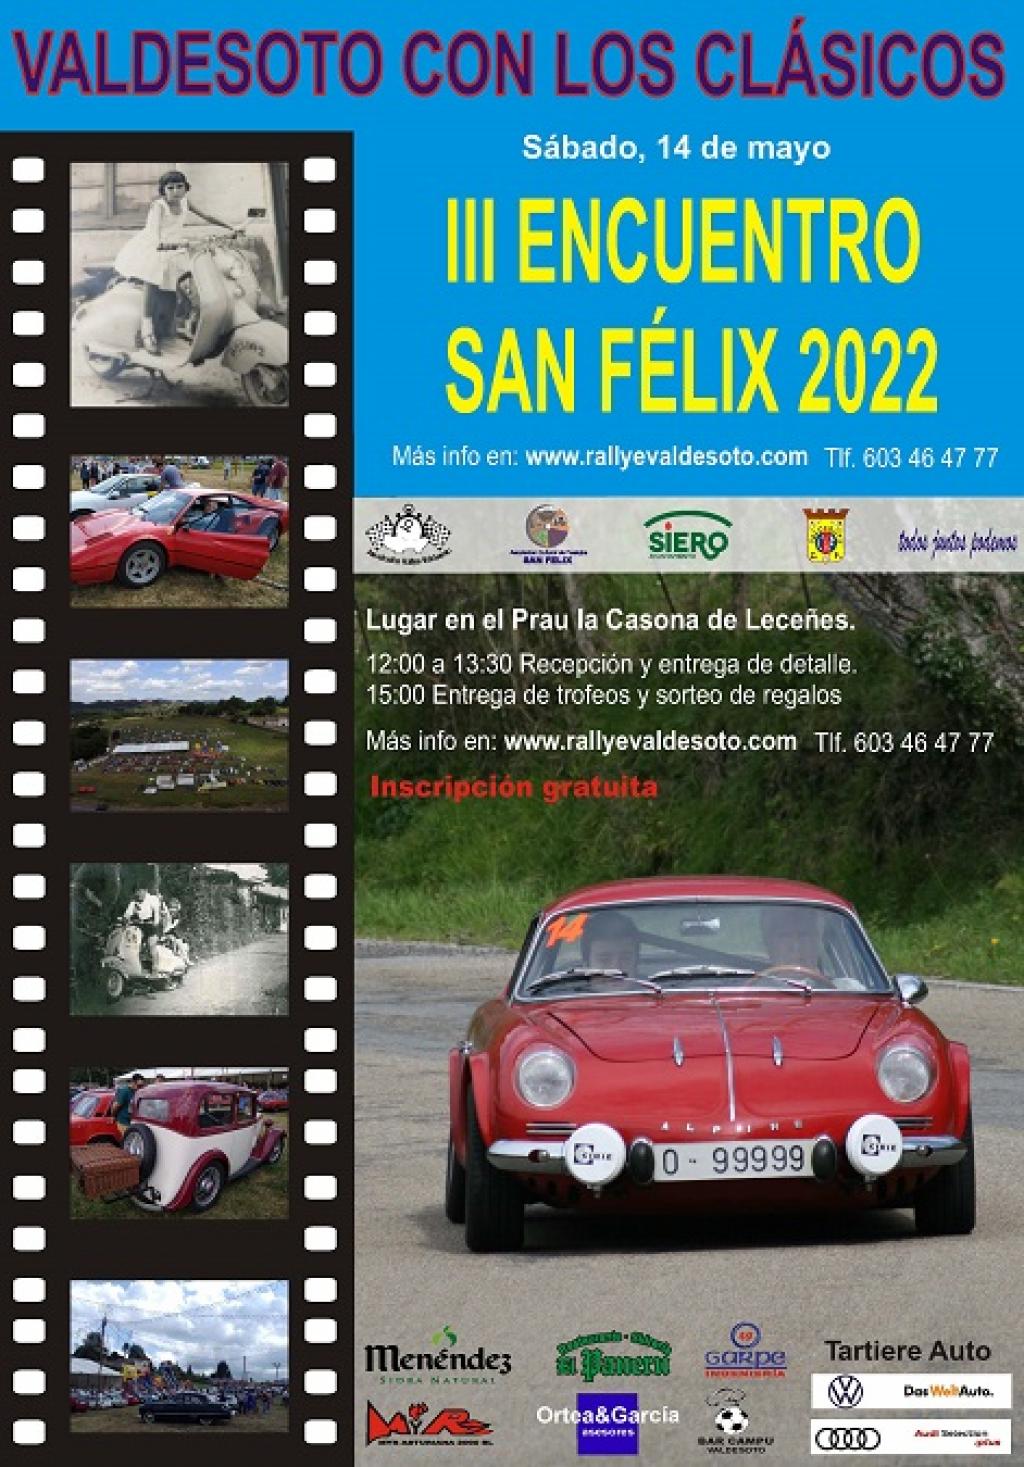 El Tapin - El 14 de mayo se realizará el III Encuentro San Félix 2022 de vehículos clásicos en Valdesoto